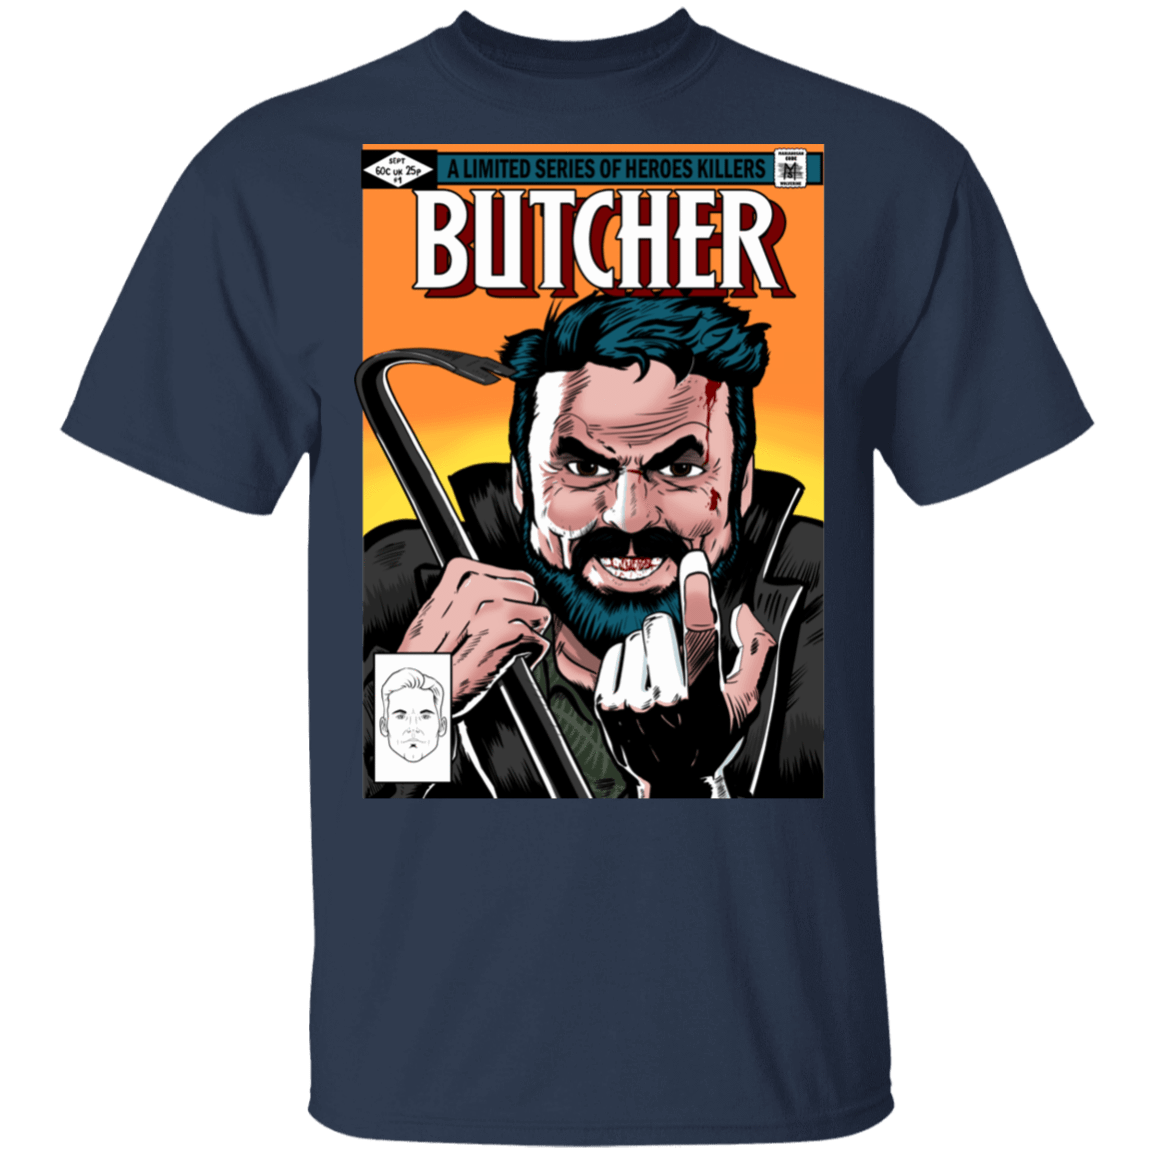 T-Shirts Navy / S The Butcher T-Shirt